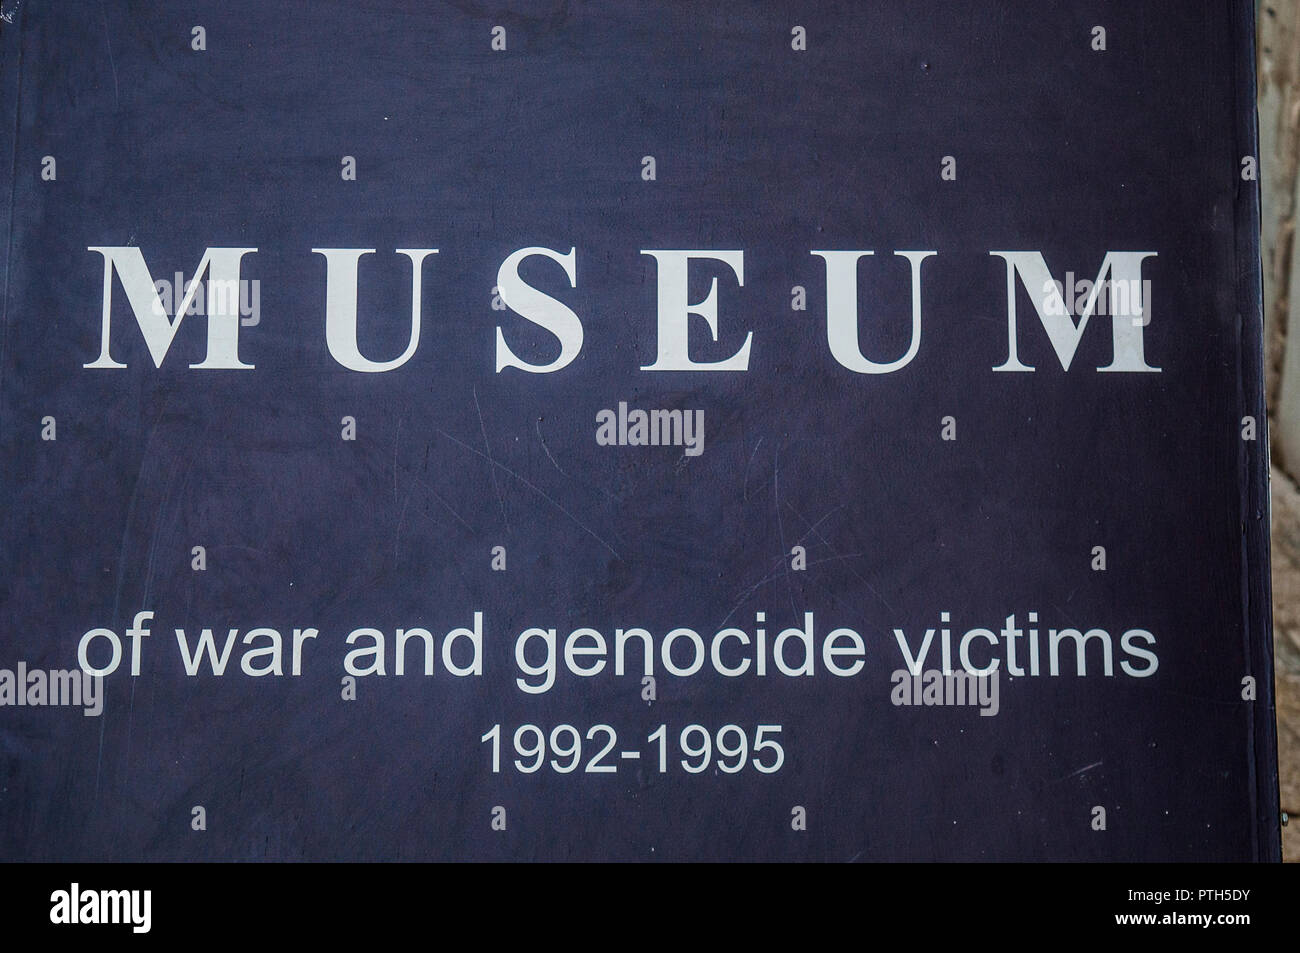 Mostar: das Museum von Krieg und Völkermord Opfer 1992-1995, Zeugnis des bosnischen Krieges anzeigen Persönliche Gegenstände, die aus Massengräbern exhumiert Stockfoto